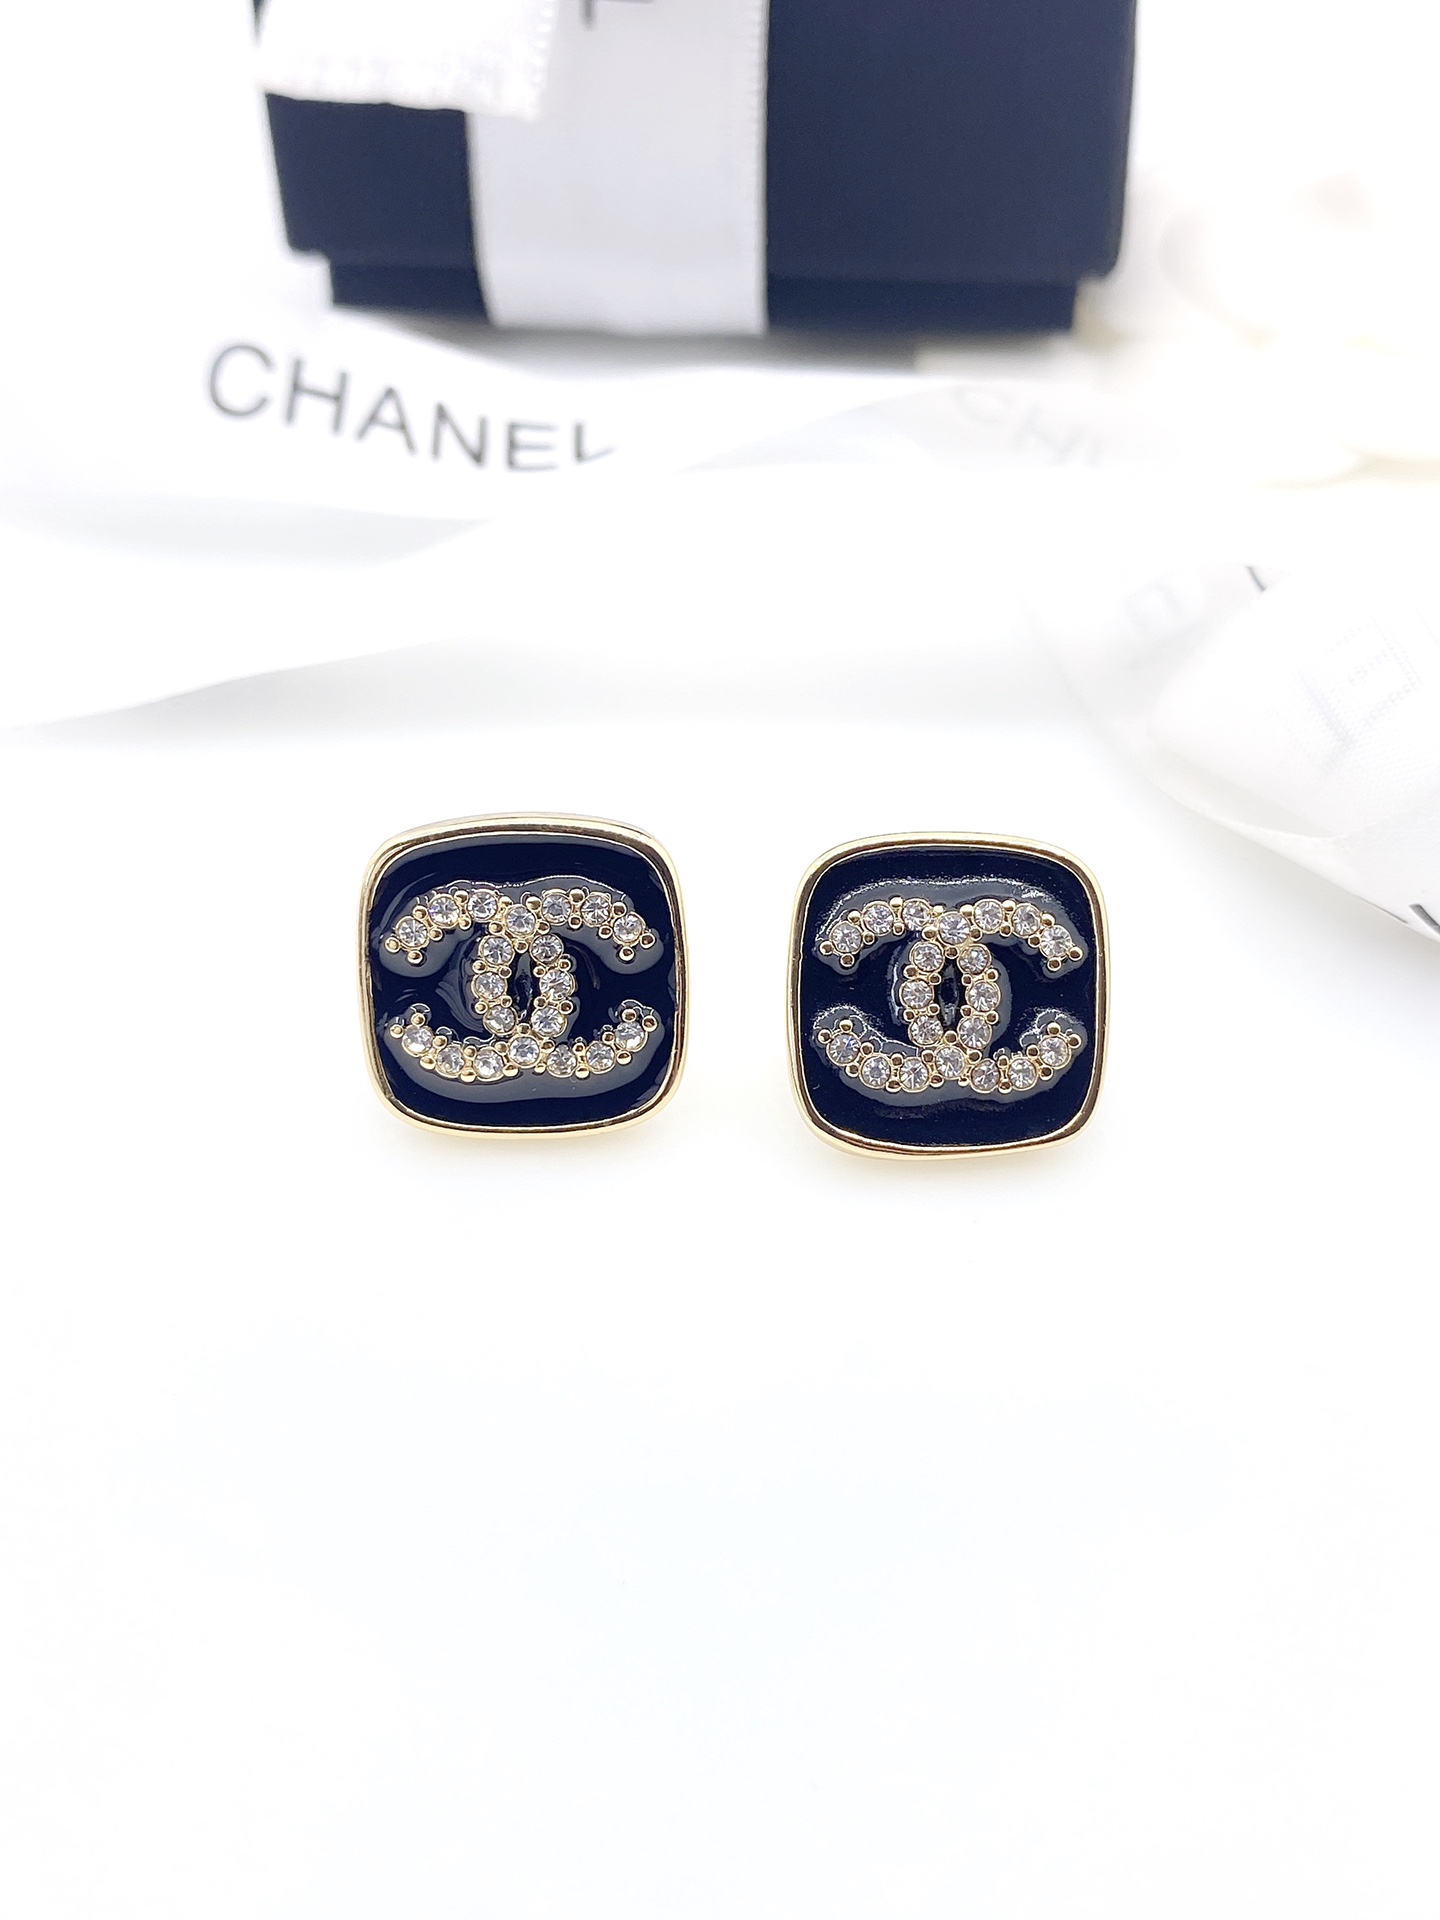 Chanel earrings耳环